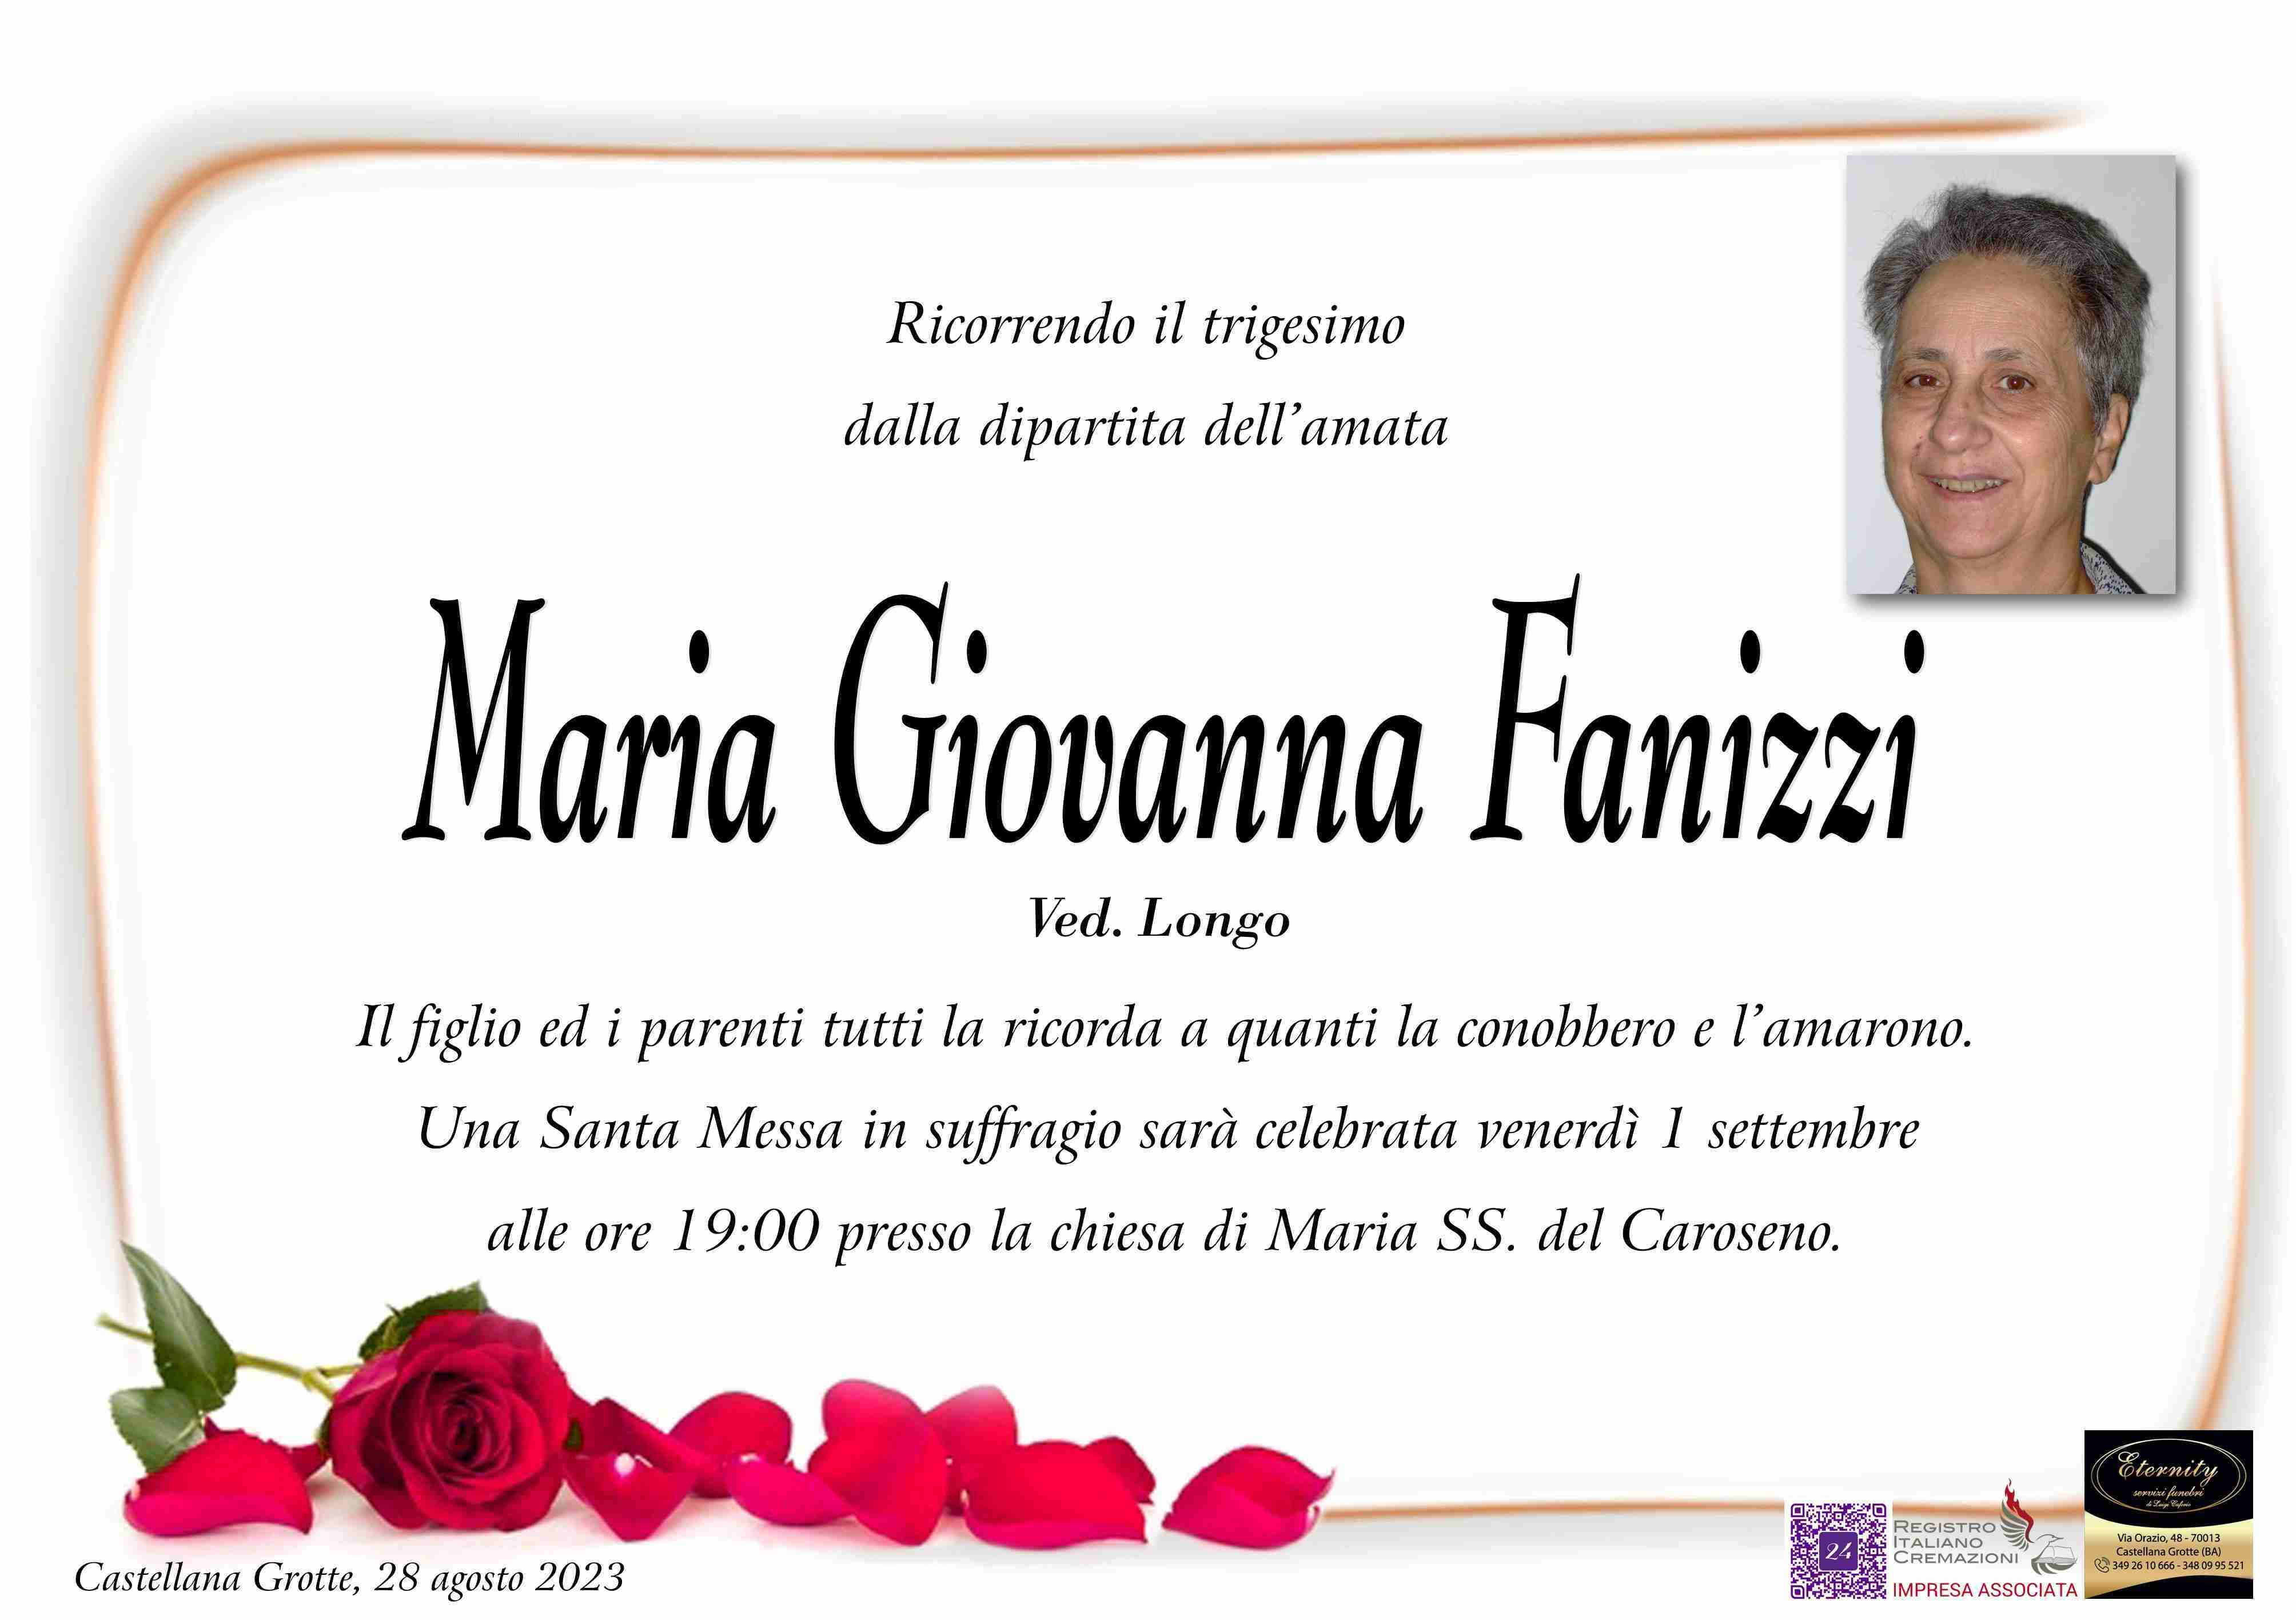 Maria Giovanna Fanizzi